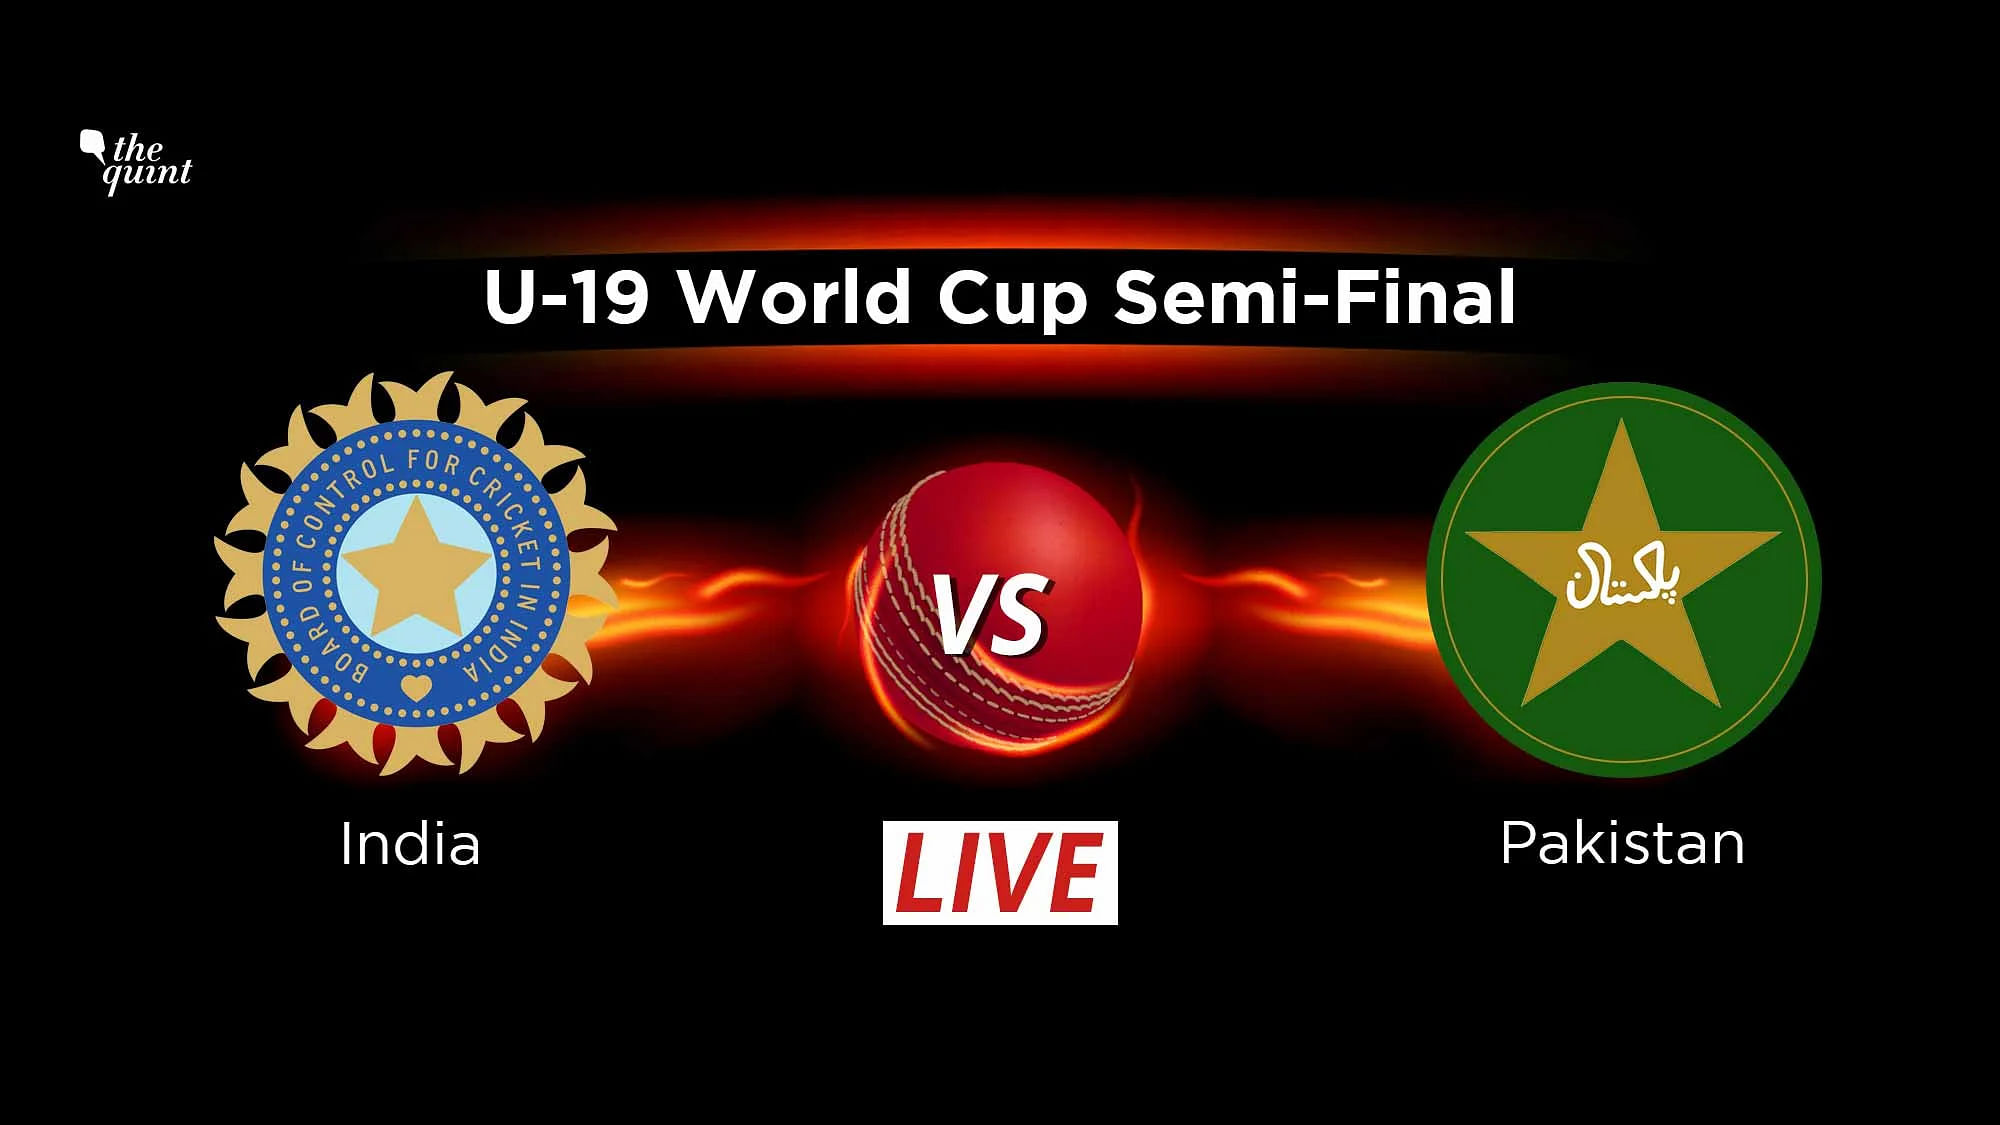 India vs Pakistan U-19 World Cup Semi Final